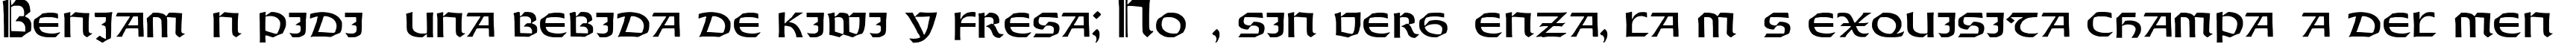 Пример написания шрифтом Orotund Capitals Heavy текста на испанском